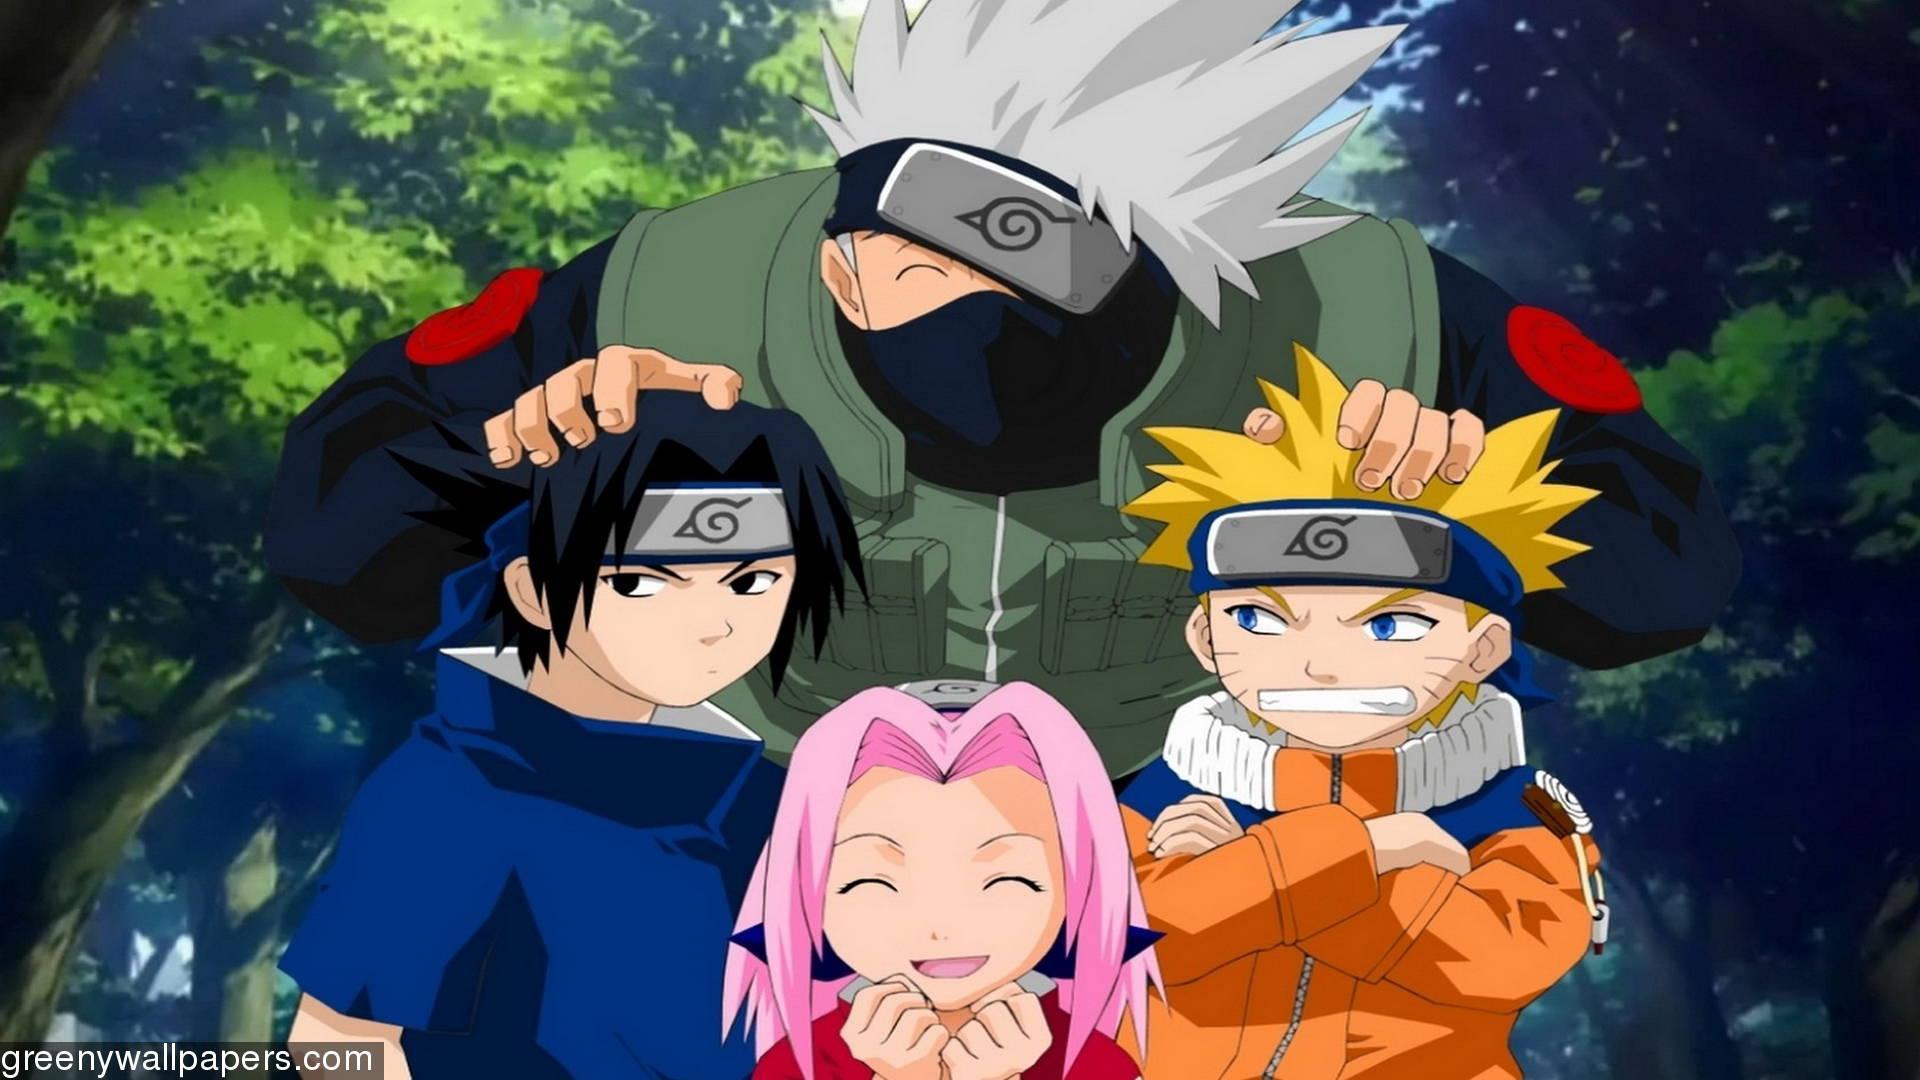 Hãy tưởng tượng về chuyến phiêu lưu của Naruto và nhóm của mình trong bức tranh nền Naruto Shippuuden. Một lần nữa, họ sẽ đối mặt với nhiều thử thách và phải đánh bại những kẻ thù mới.